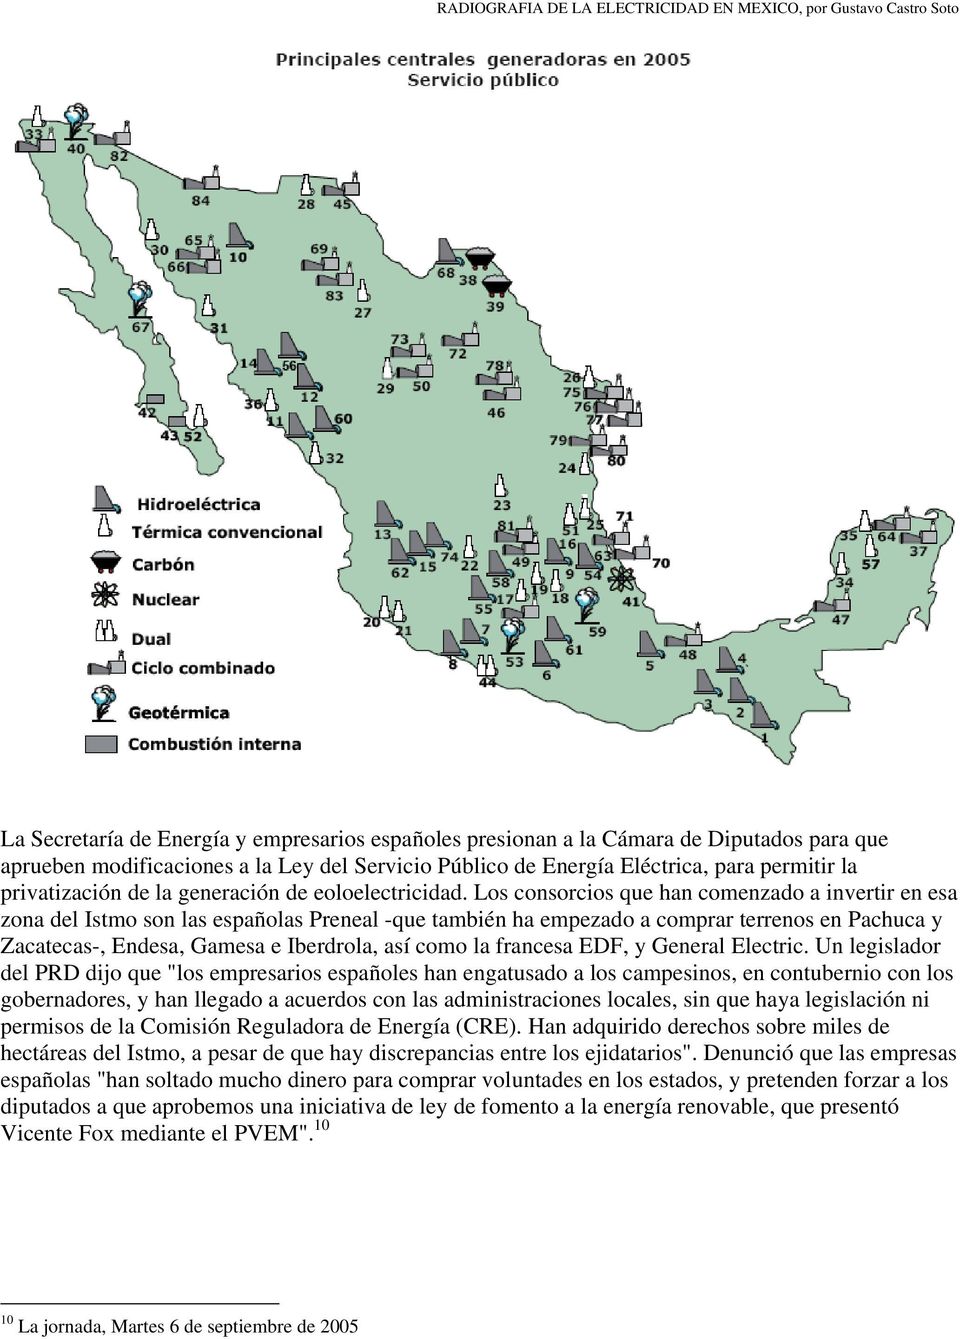 Los consorcios que han comenzado a invertir en esa zona del Istmo son las españolas Preneal -que también ha empezado a comprar terrenos en Pachuca y Zacatecas-, Endesa, Gamesa e Iberdrola, así como